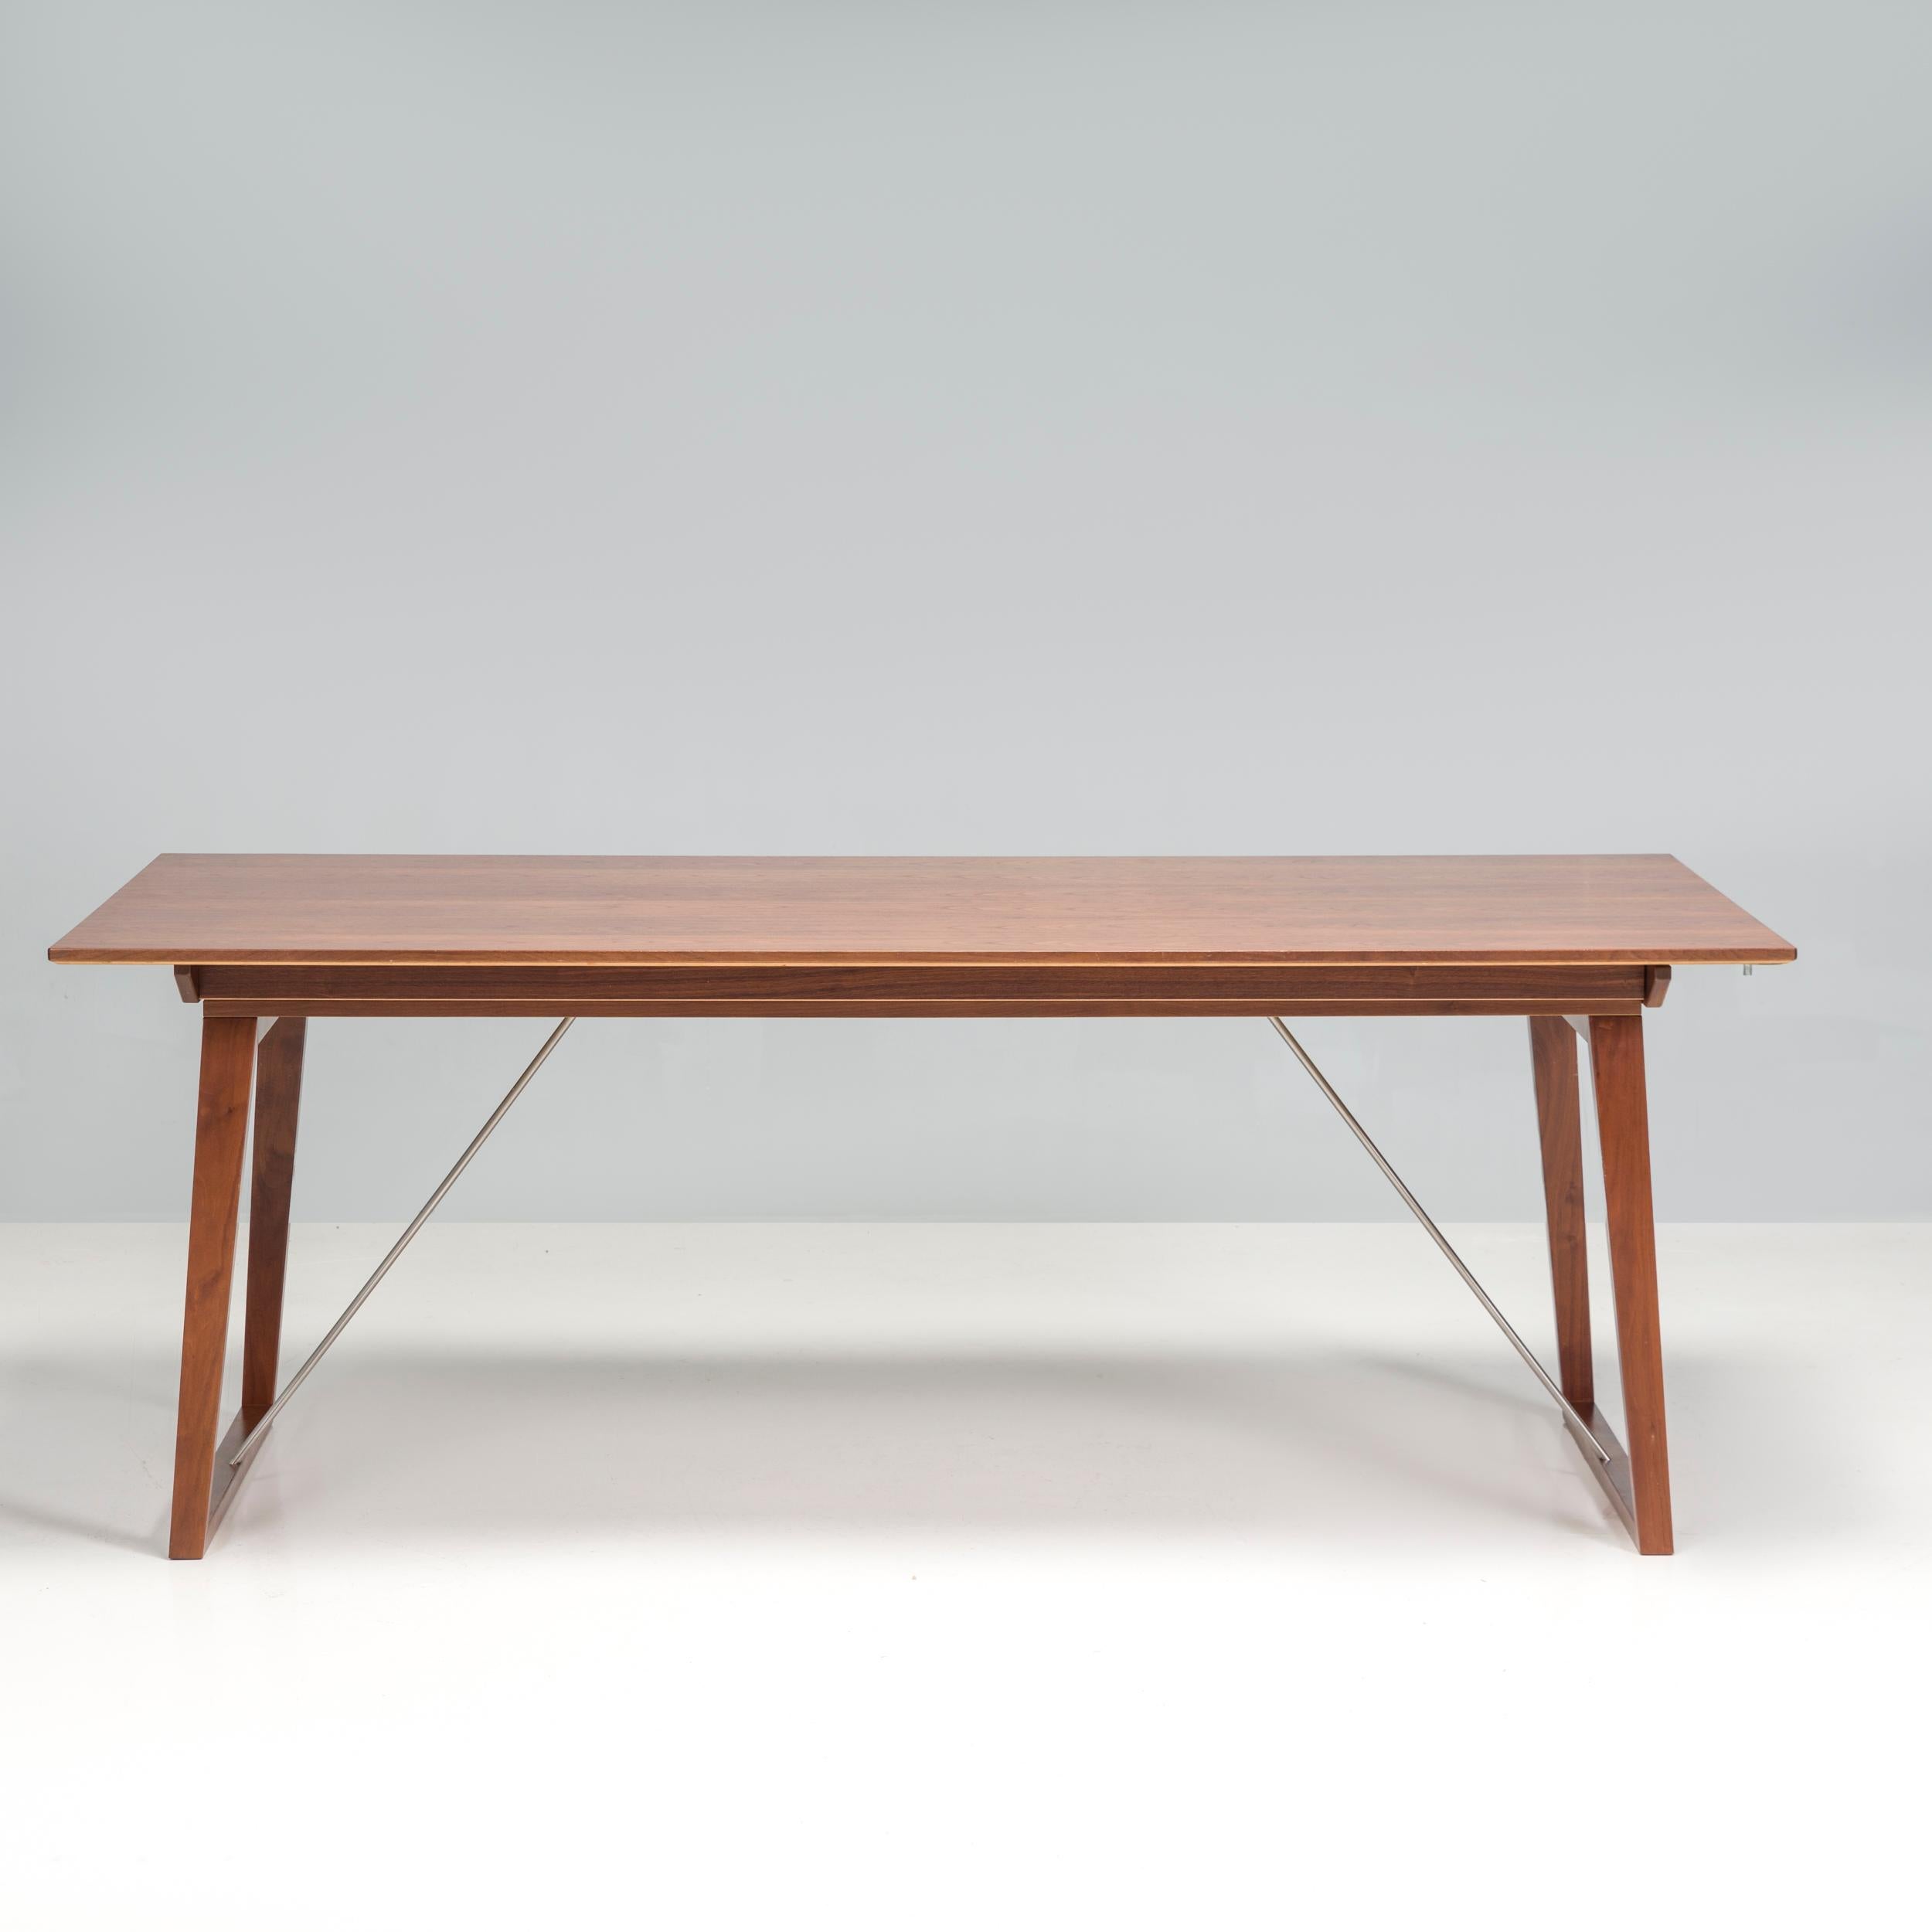 Der von Skovby entworfene und hergestellte Esstisch Modell 38 ist ein fantastisches Beispiel für zeitgenössisches skandinavisches Design.

Der aus Holz gefertigte Tisch hat abgewinkelte, trapezförmige Beine und eine große, rechteckige Tischplatte,